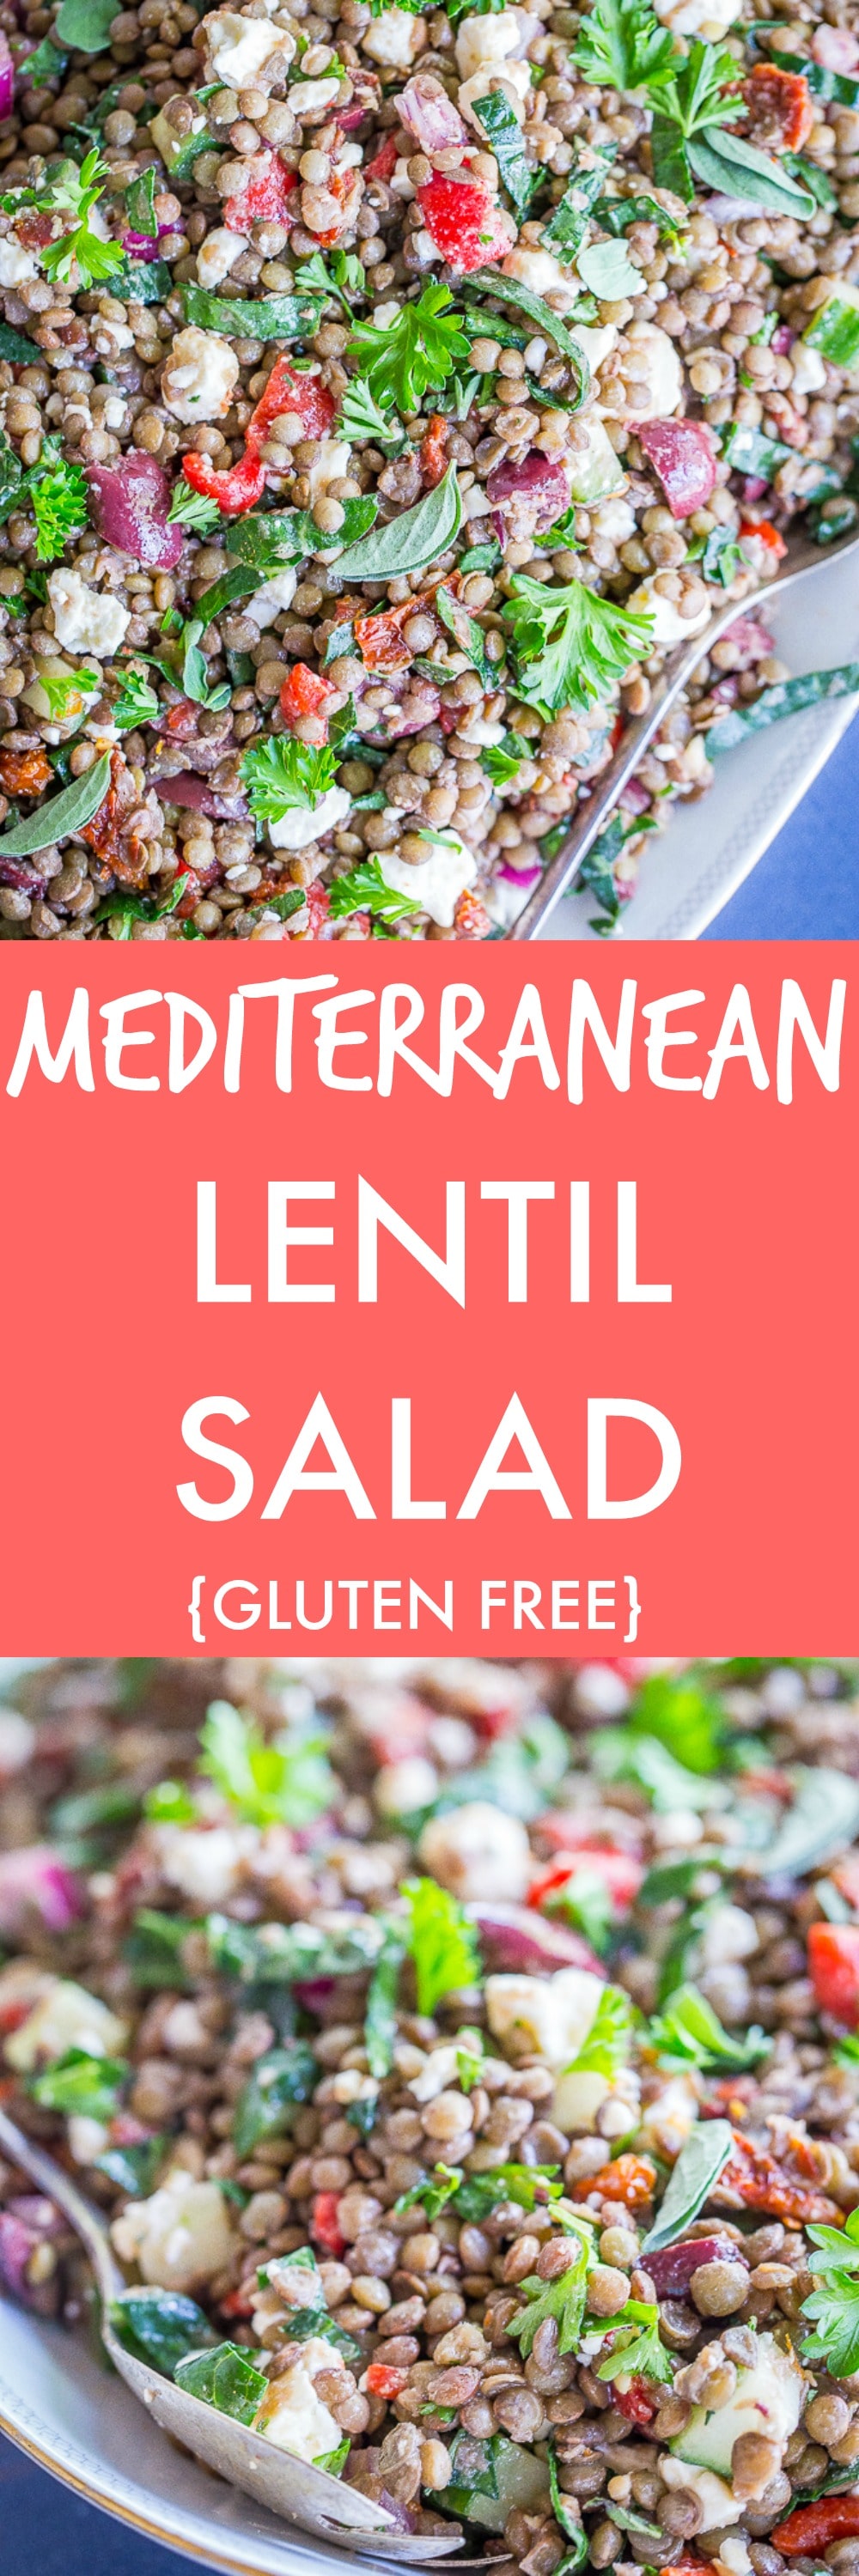 Mediterranean Lentil Salad - She Likes Food